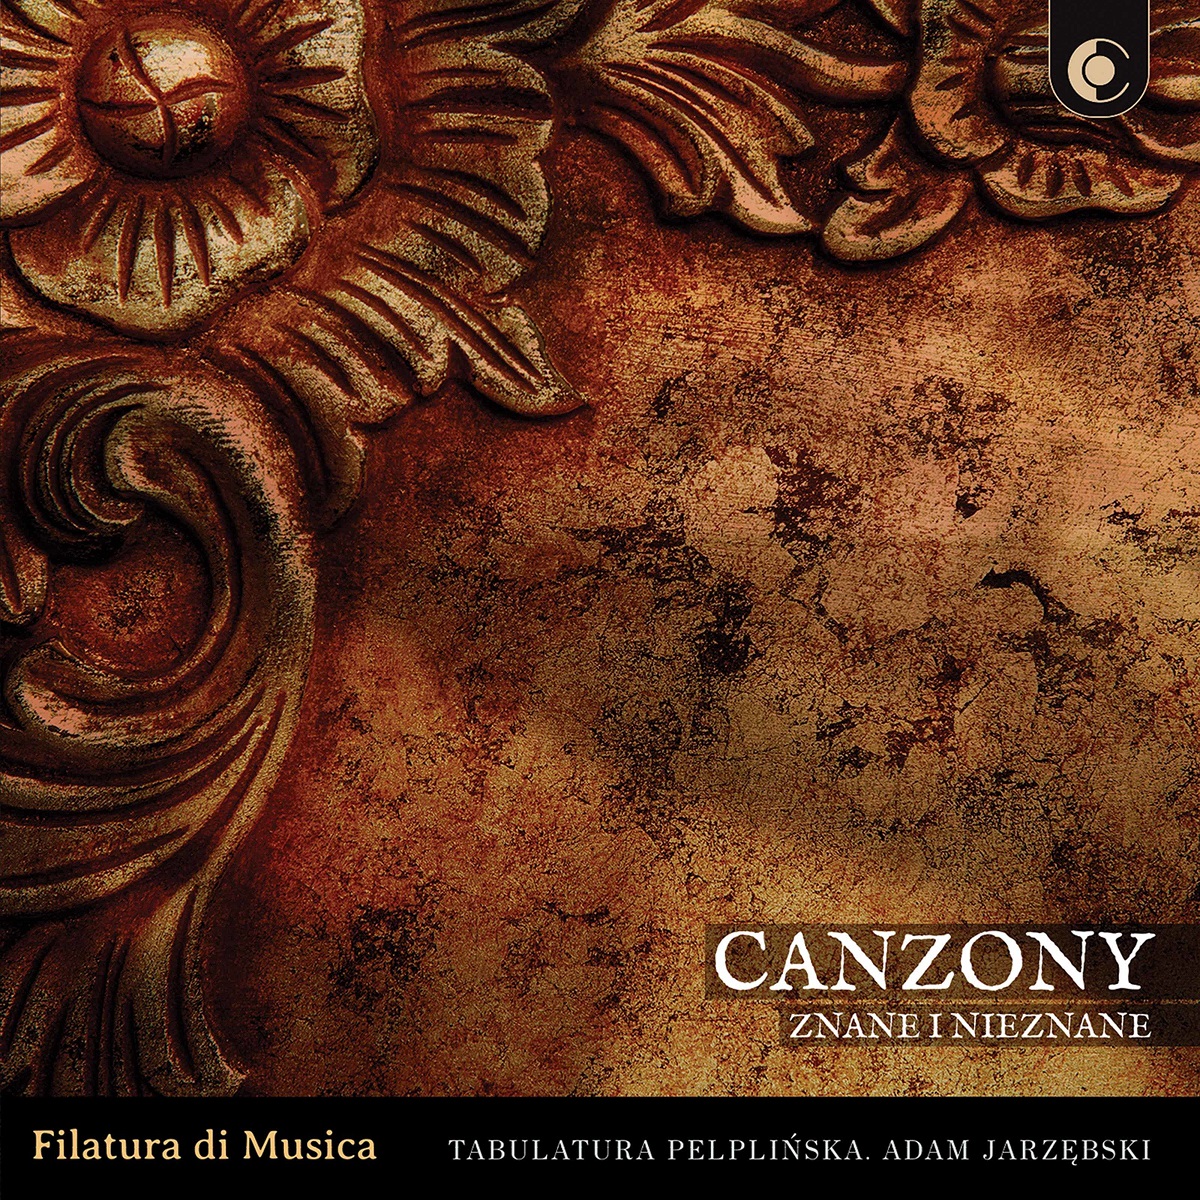 Filatura di Musica – Canzony znane i nieznane (2020) [FLAC 24bit/96kHz]